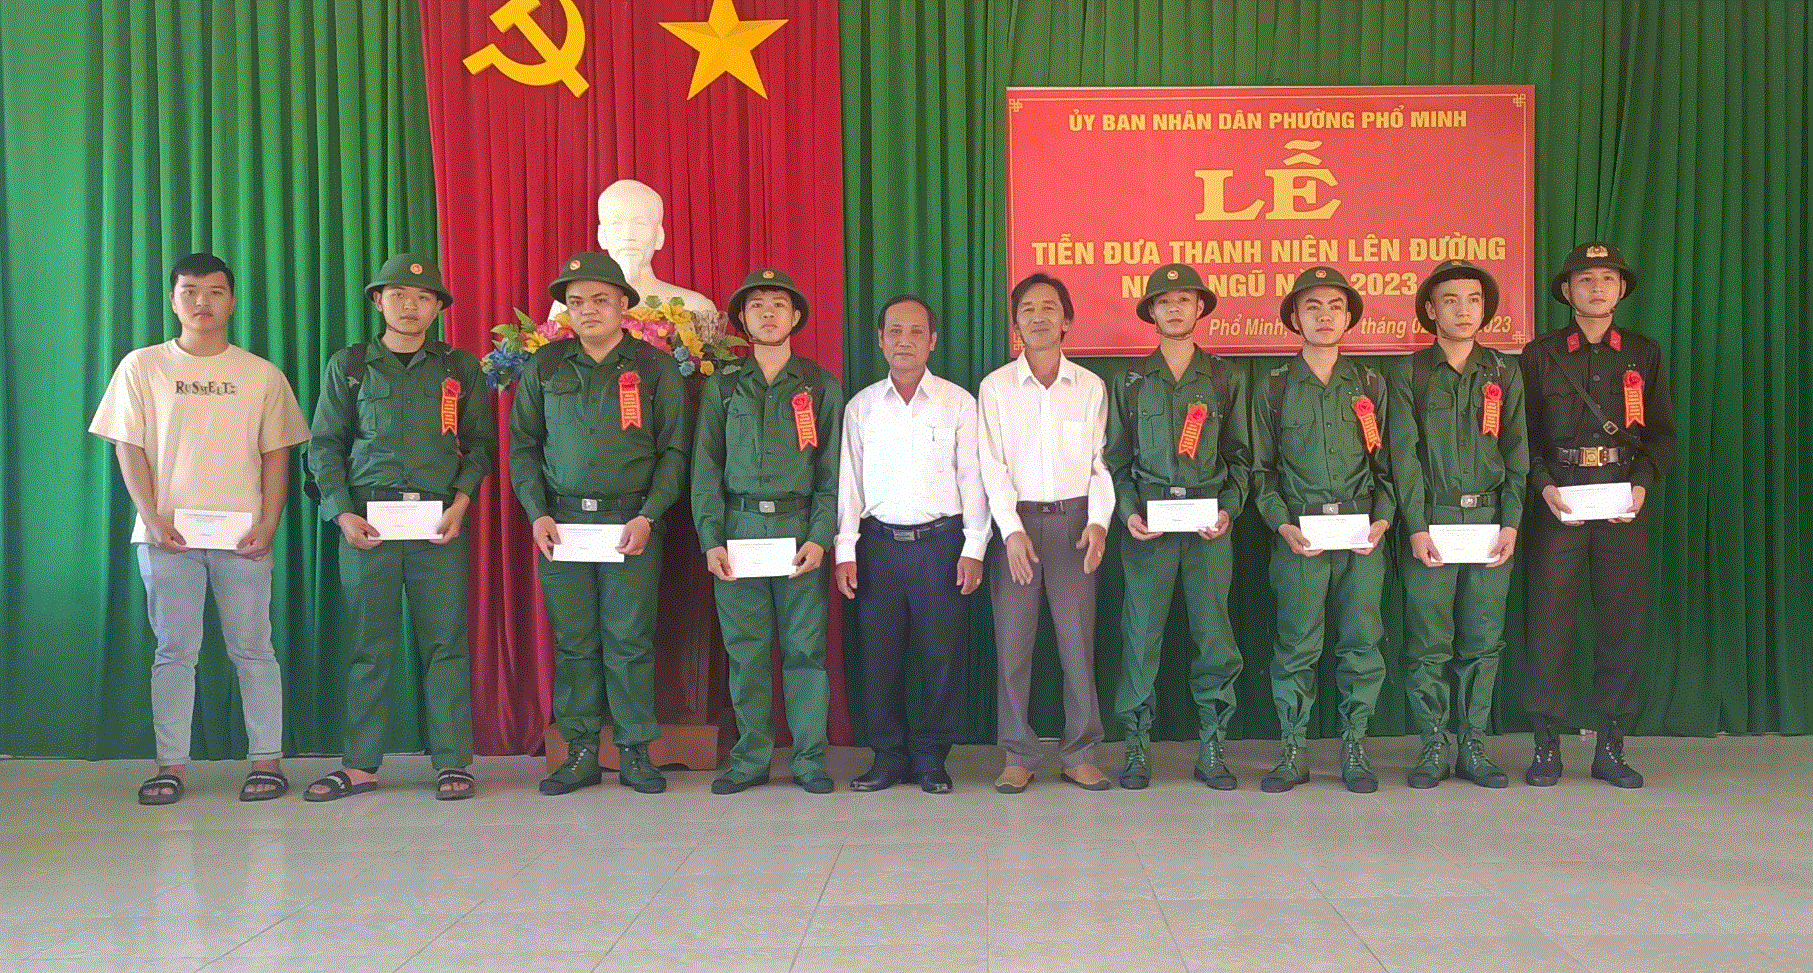 Phường Phổ Minh tổ chức lễ tiễn đưa thanh niên lên đường nhập ngũ năm 2023